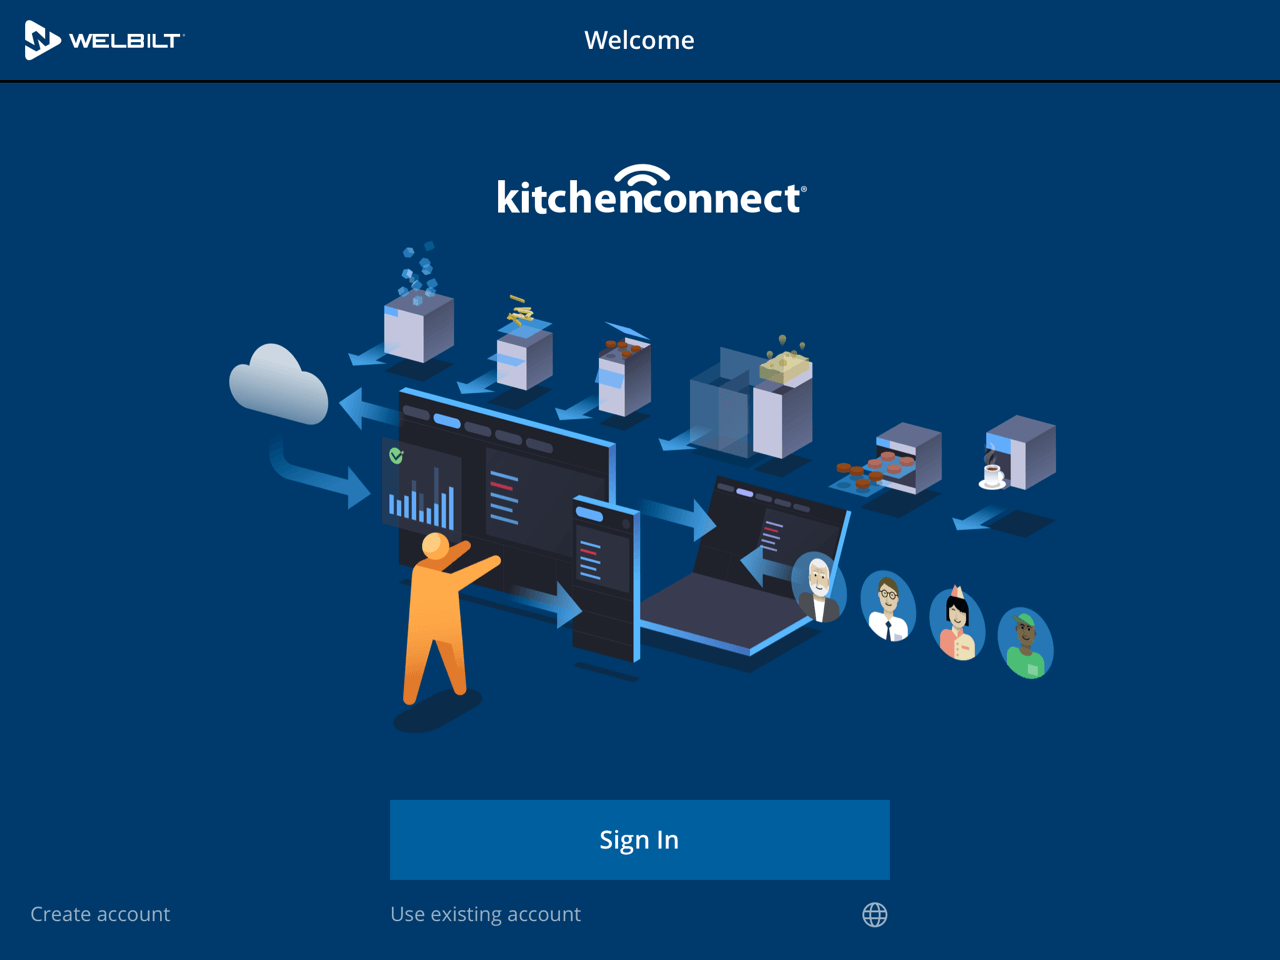 Der Startscreen der KitchenConnect Application von Welbilt zeigt eine Illustration von Nutzern und Küchengeräten in Aktion.